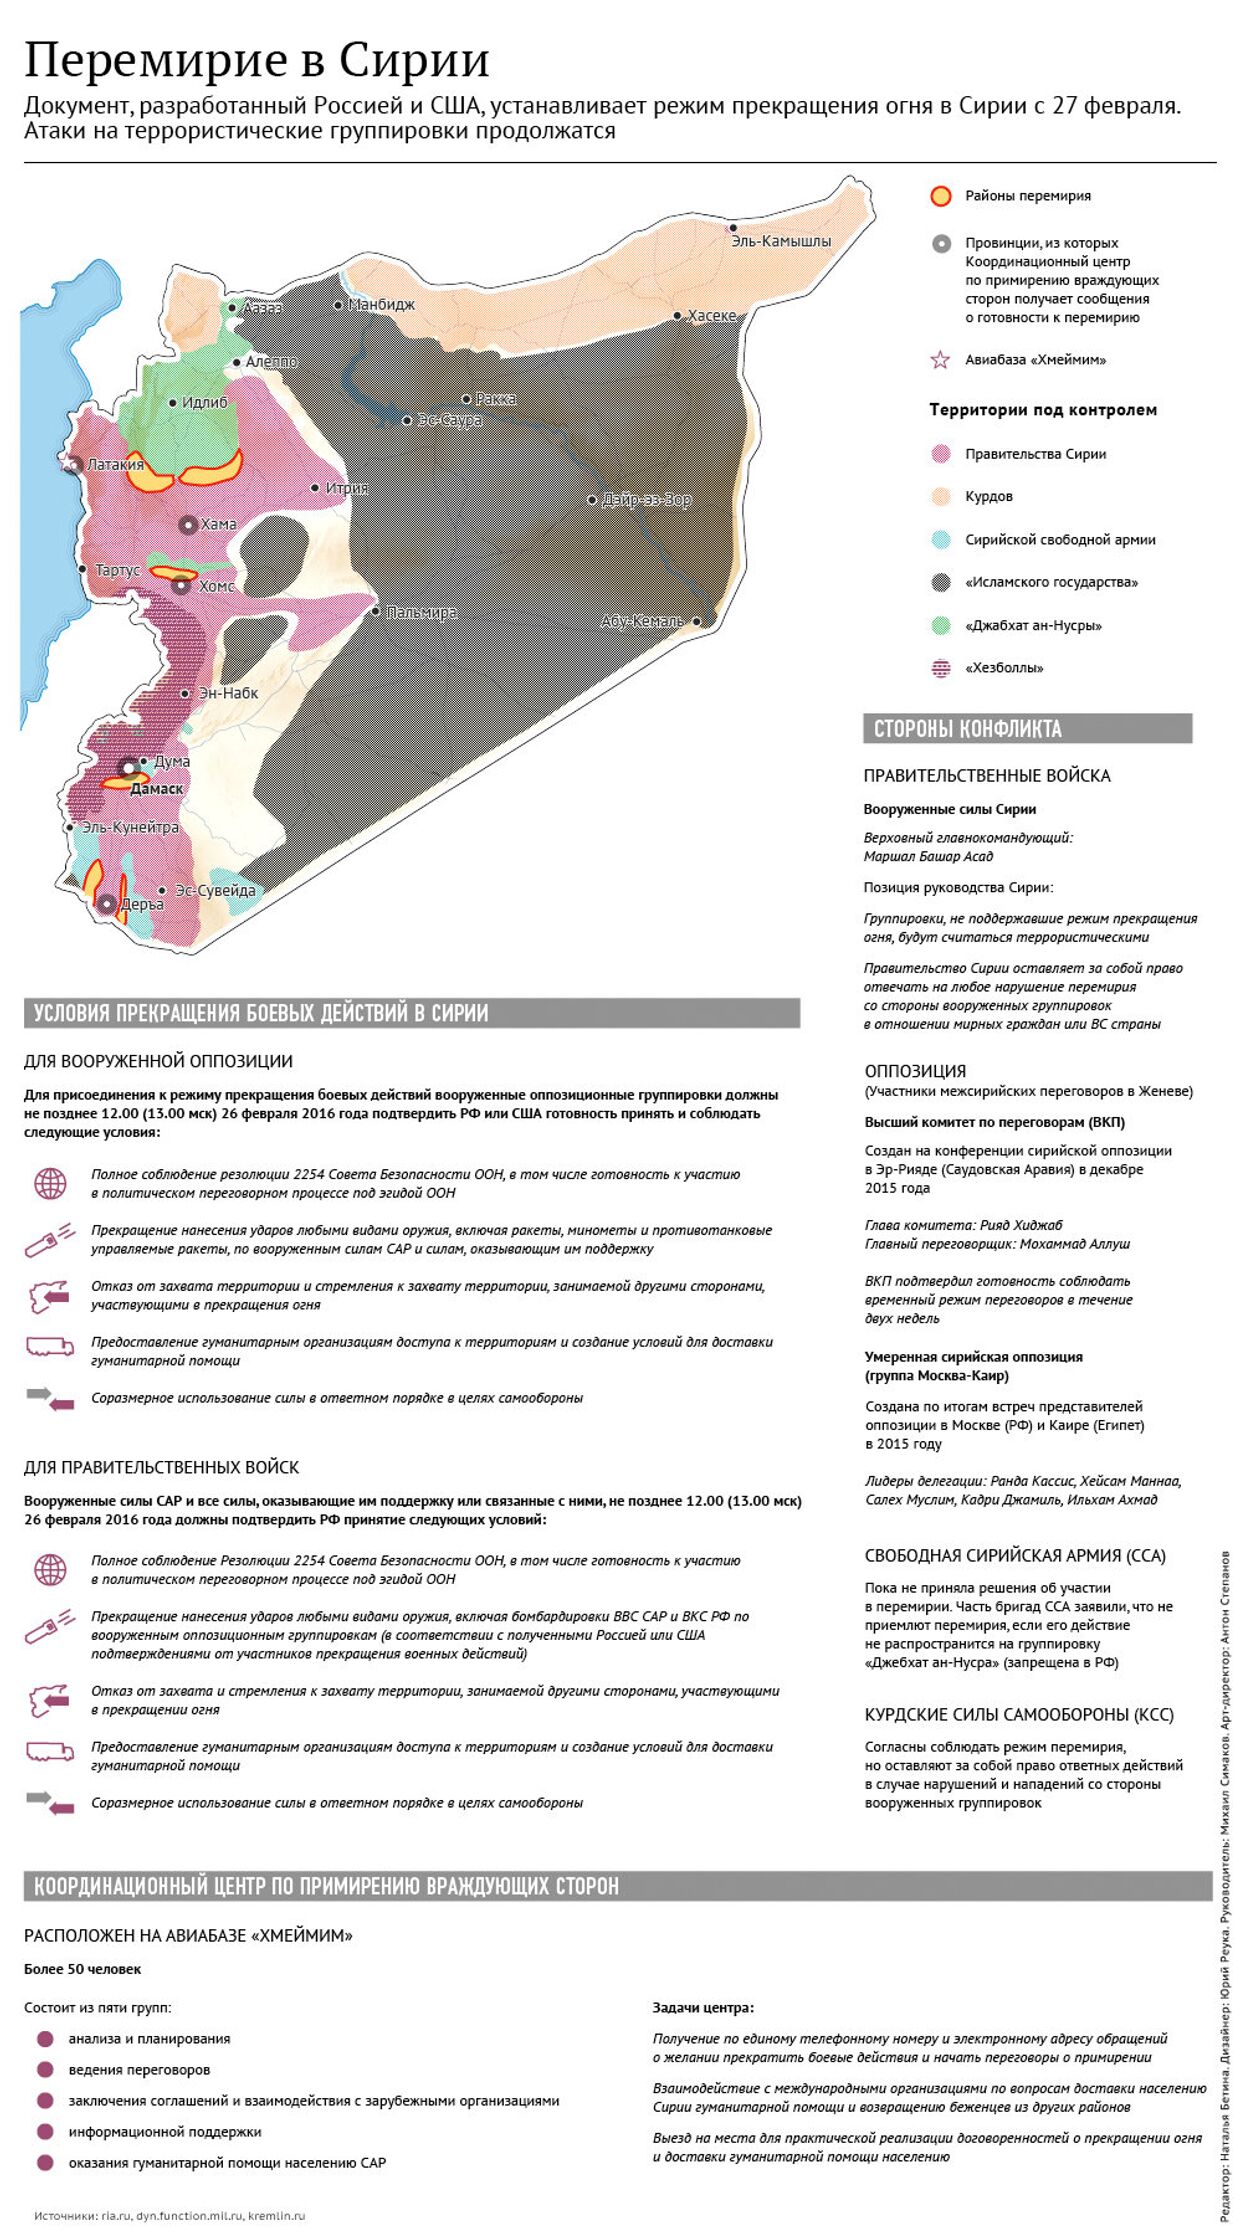 Перемирие в Сирии: условия и координационный центр